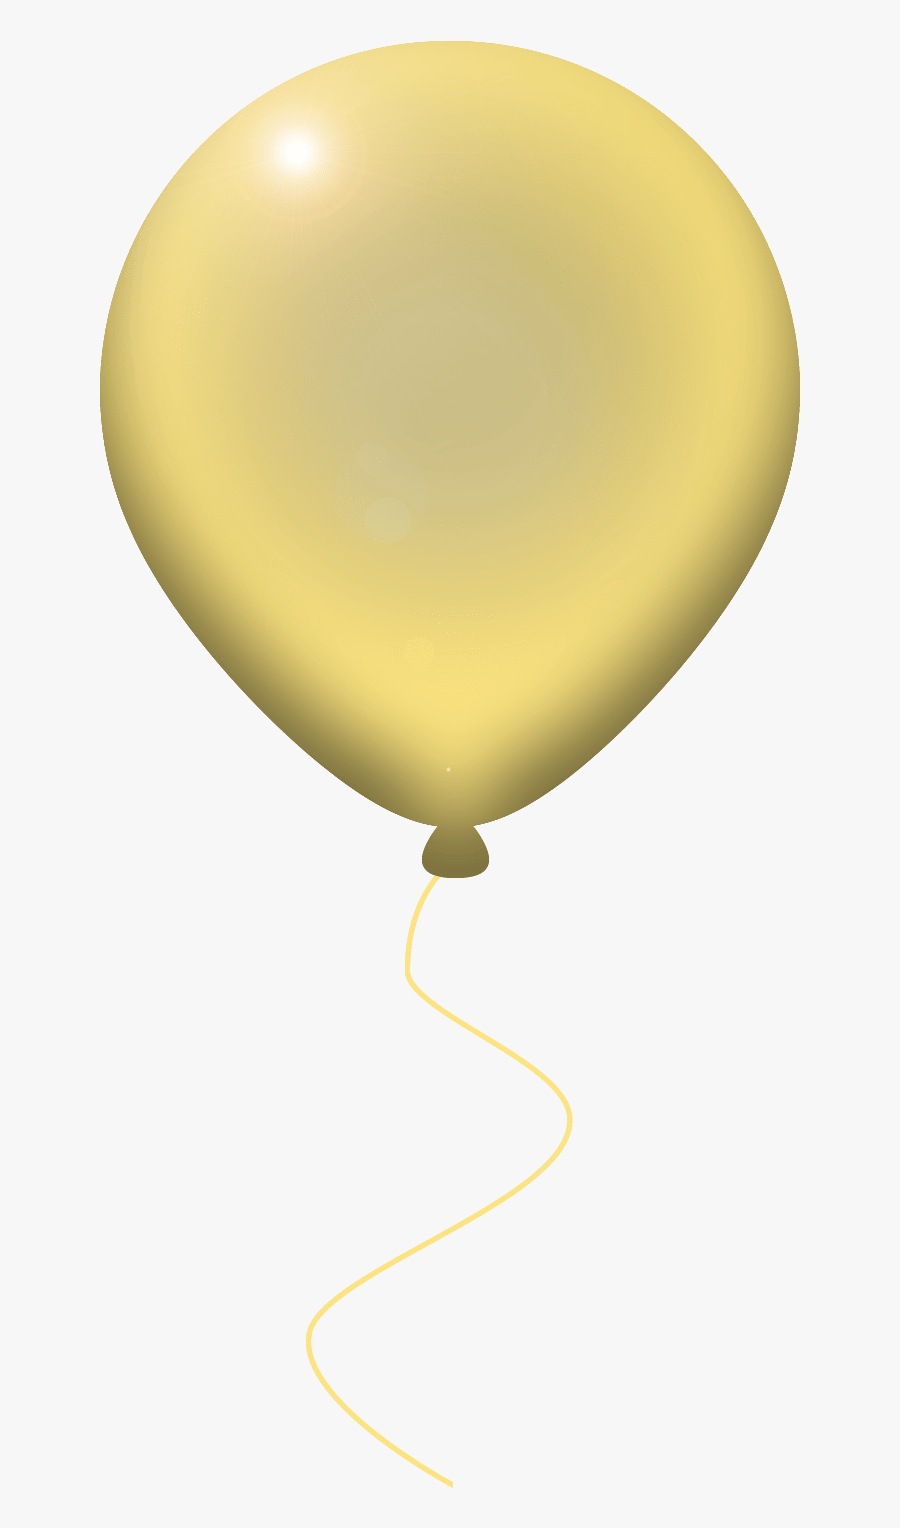 Transparent Balloon Pop Clipart - Balloon, Transparent Clipart